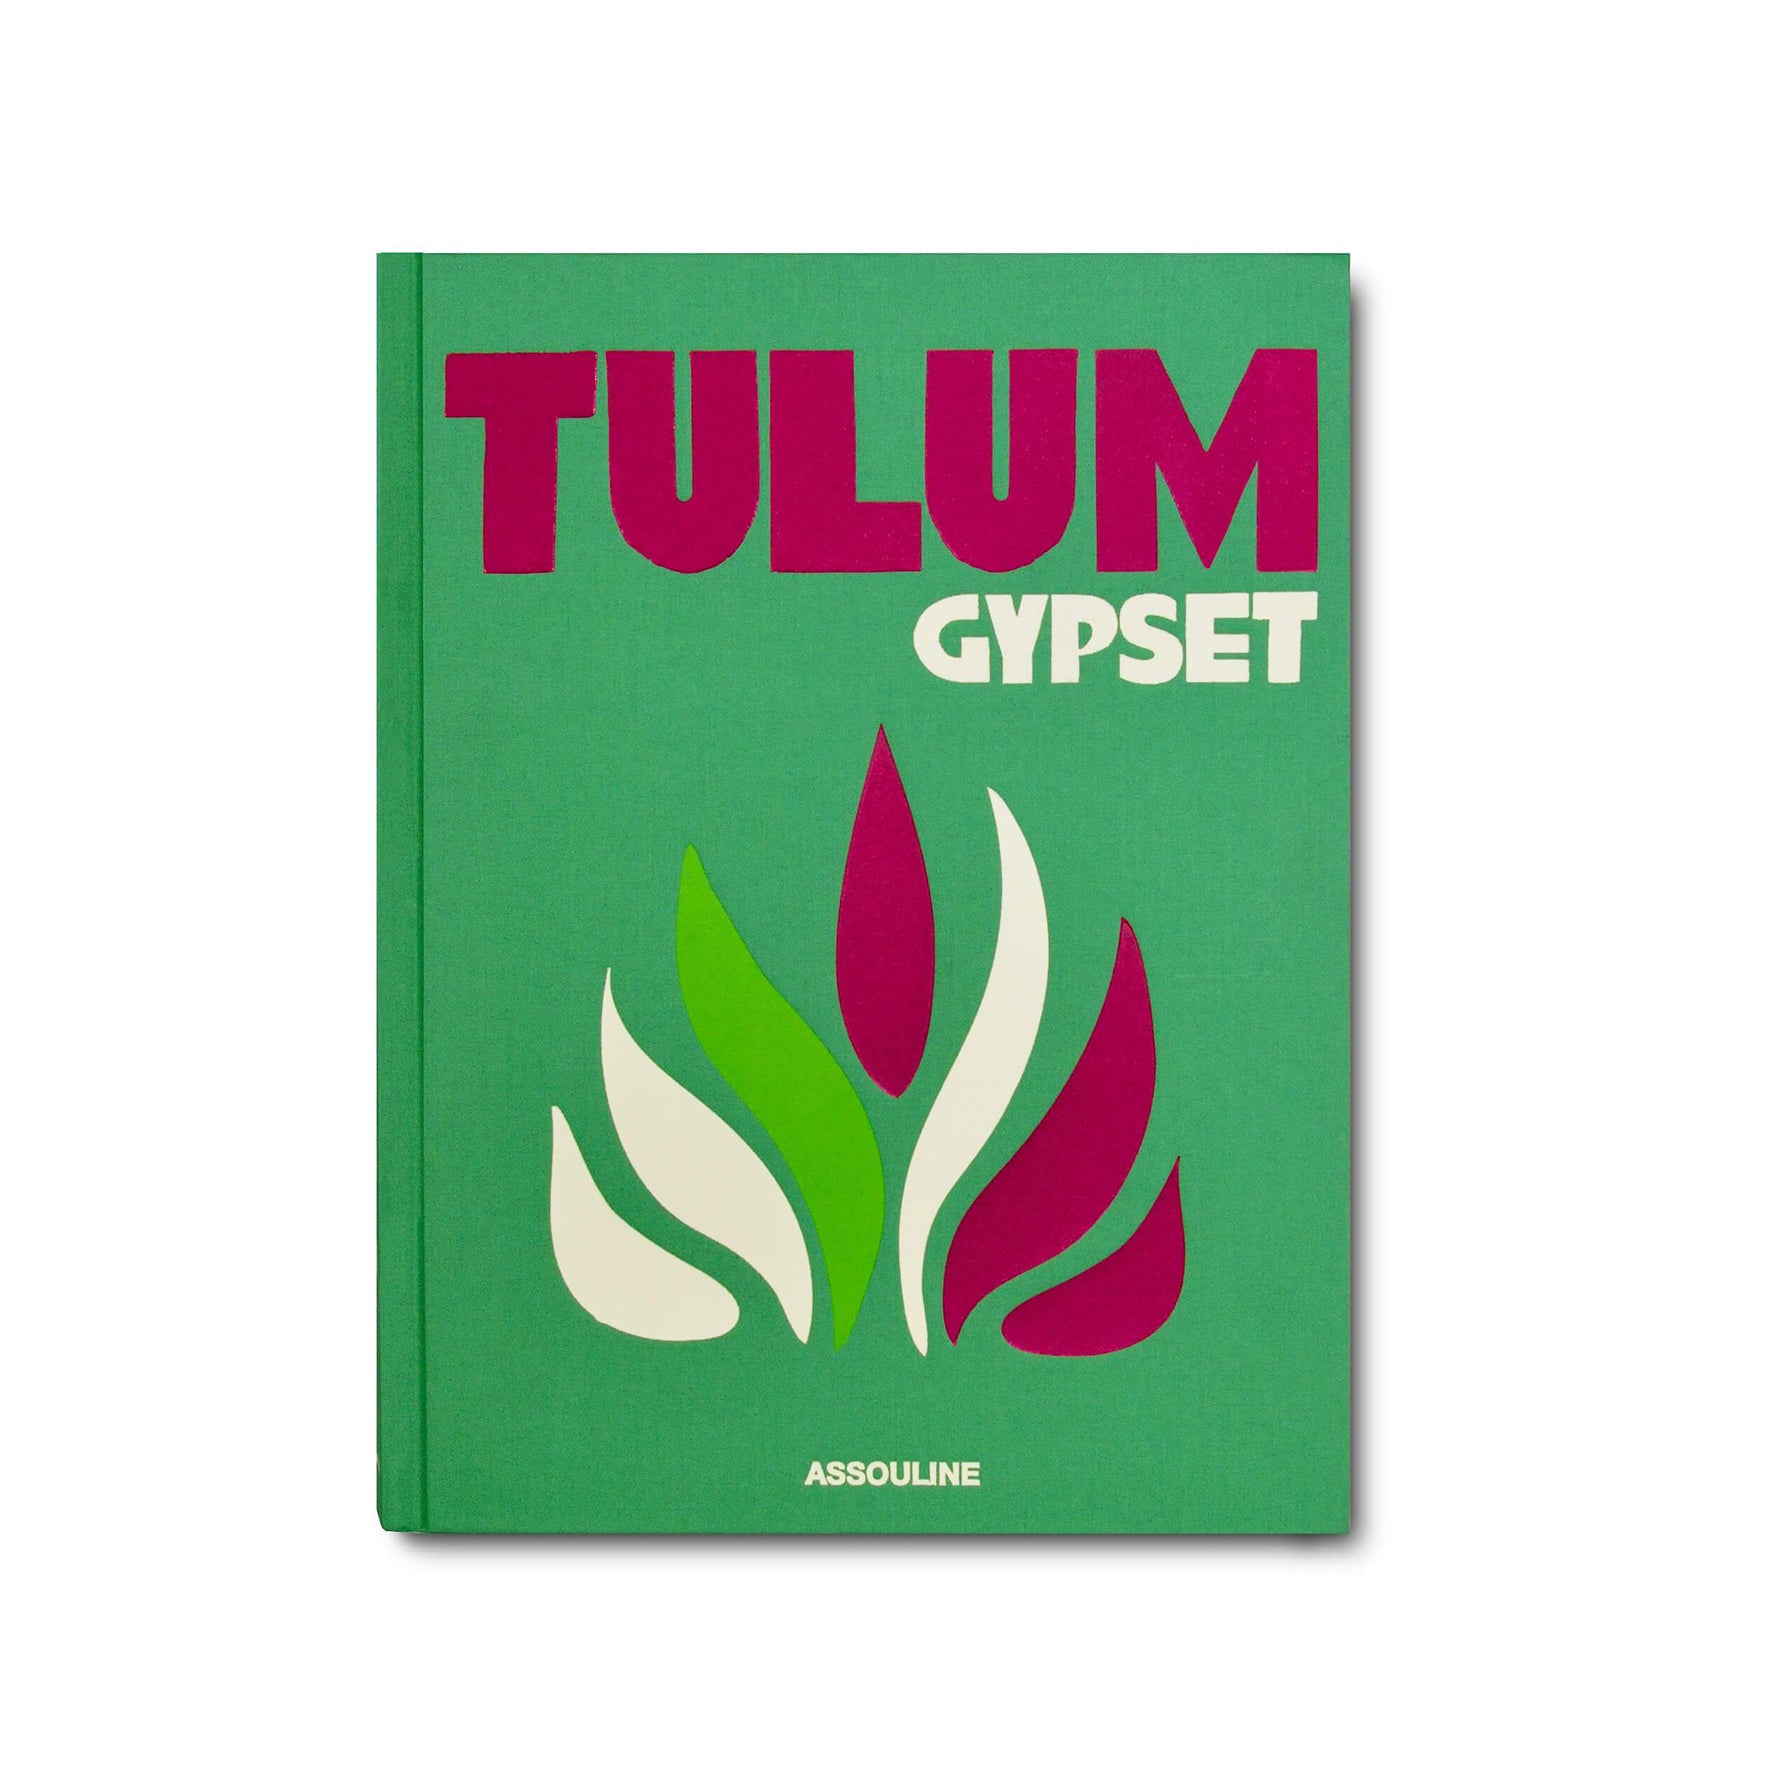 Tulum Gypset by Assouline